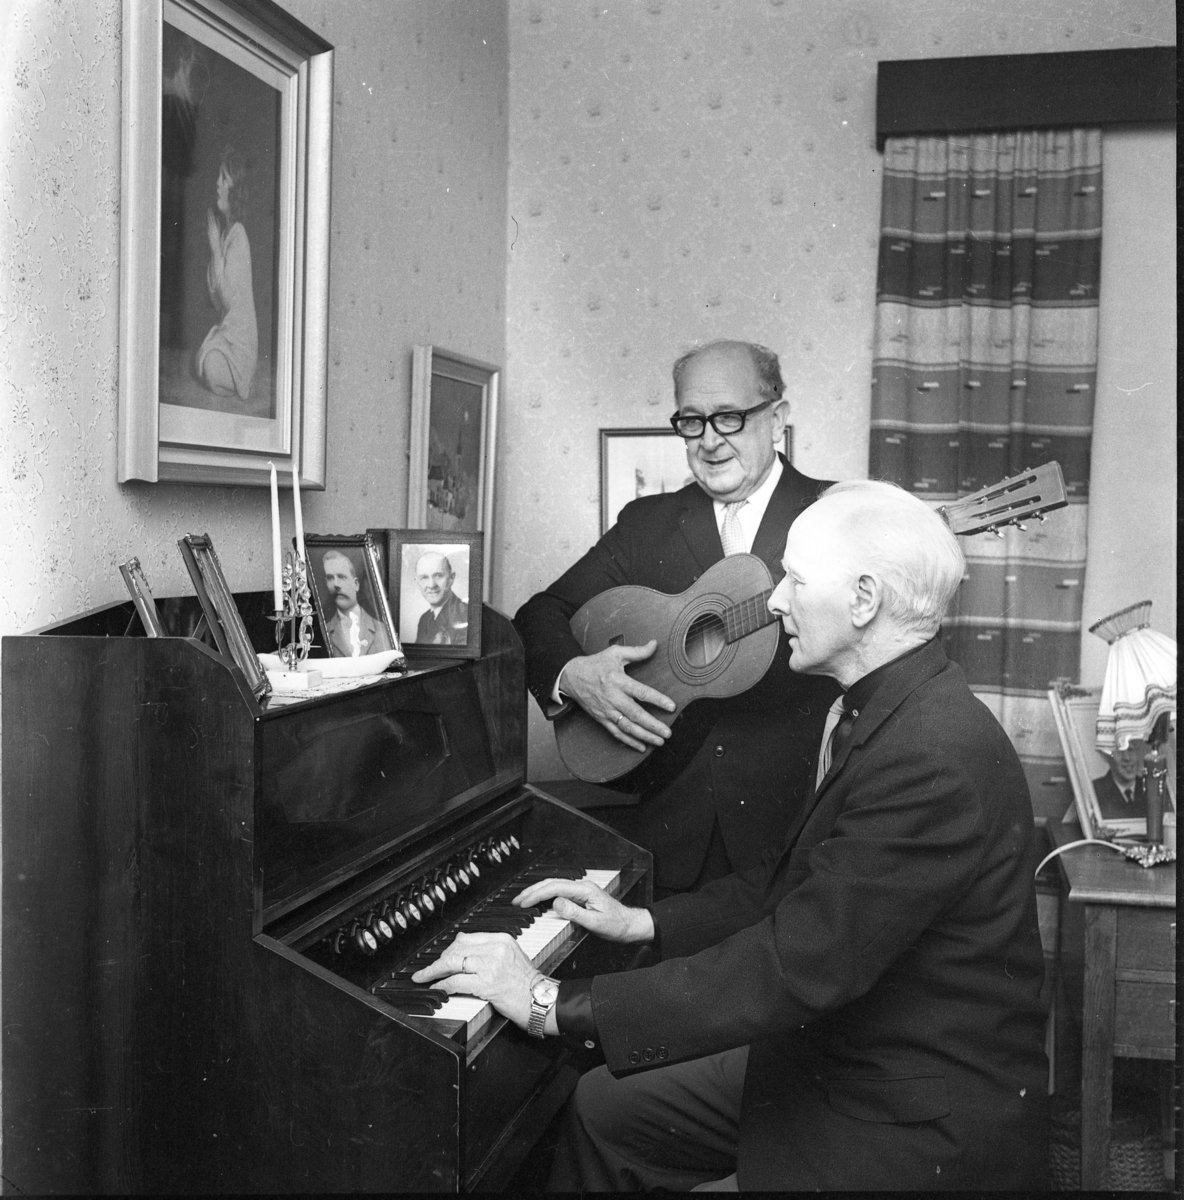 Carl Öst i glasögon spelar på en gitarr. Han står intill Martin Persson som sitter och spelar på en orgel. På orgeln står en ljusstake med två ljus samt ramade porträttfotografier av män.